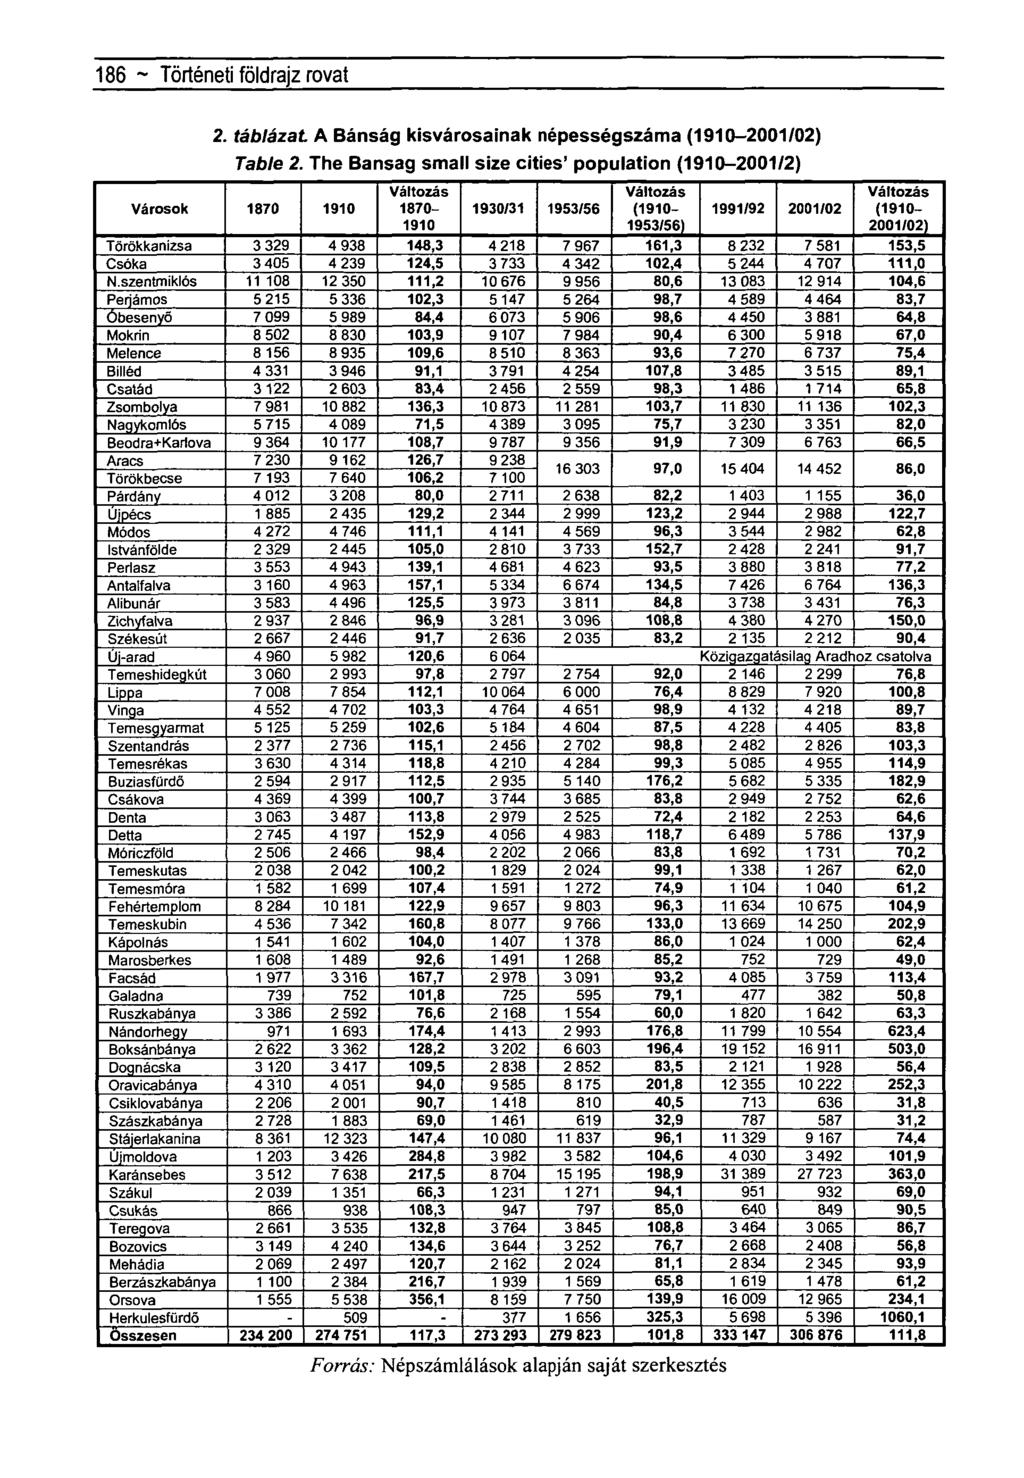 186 ~ Történeti földrajz rovat 2. táblázat A Bánság kisvárosainak népességszáma (1910-2001/02) Table 2.